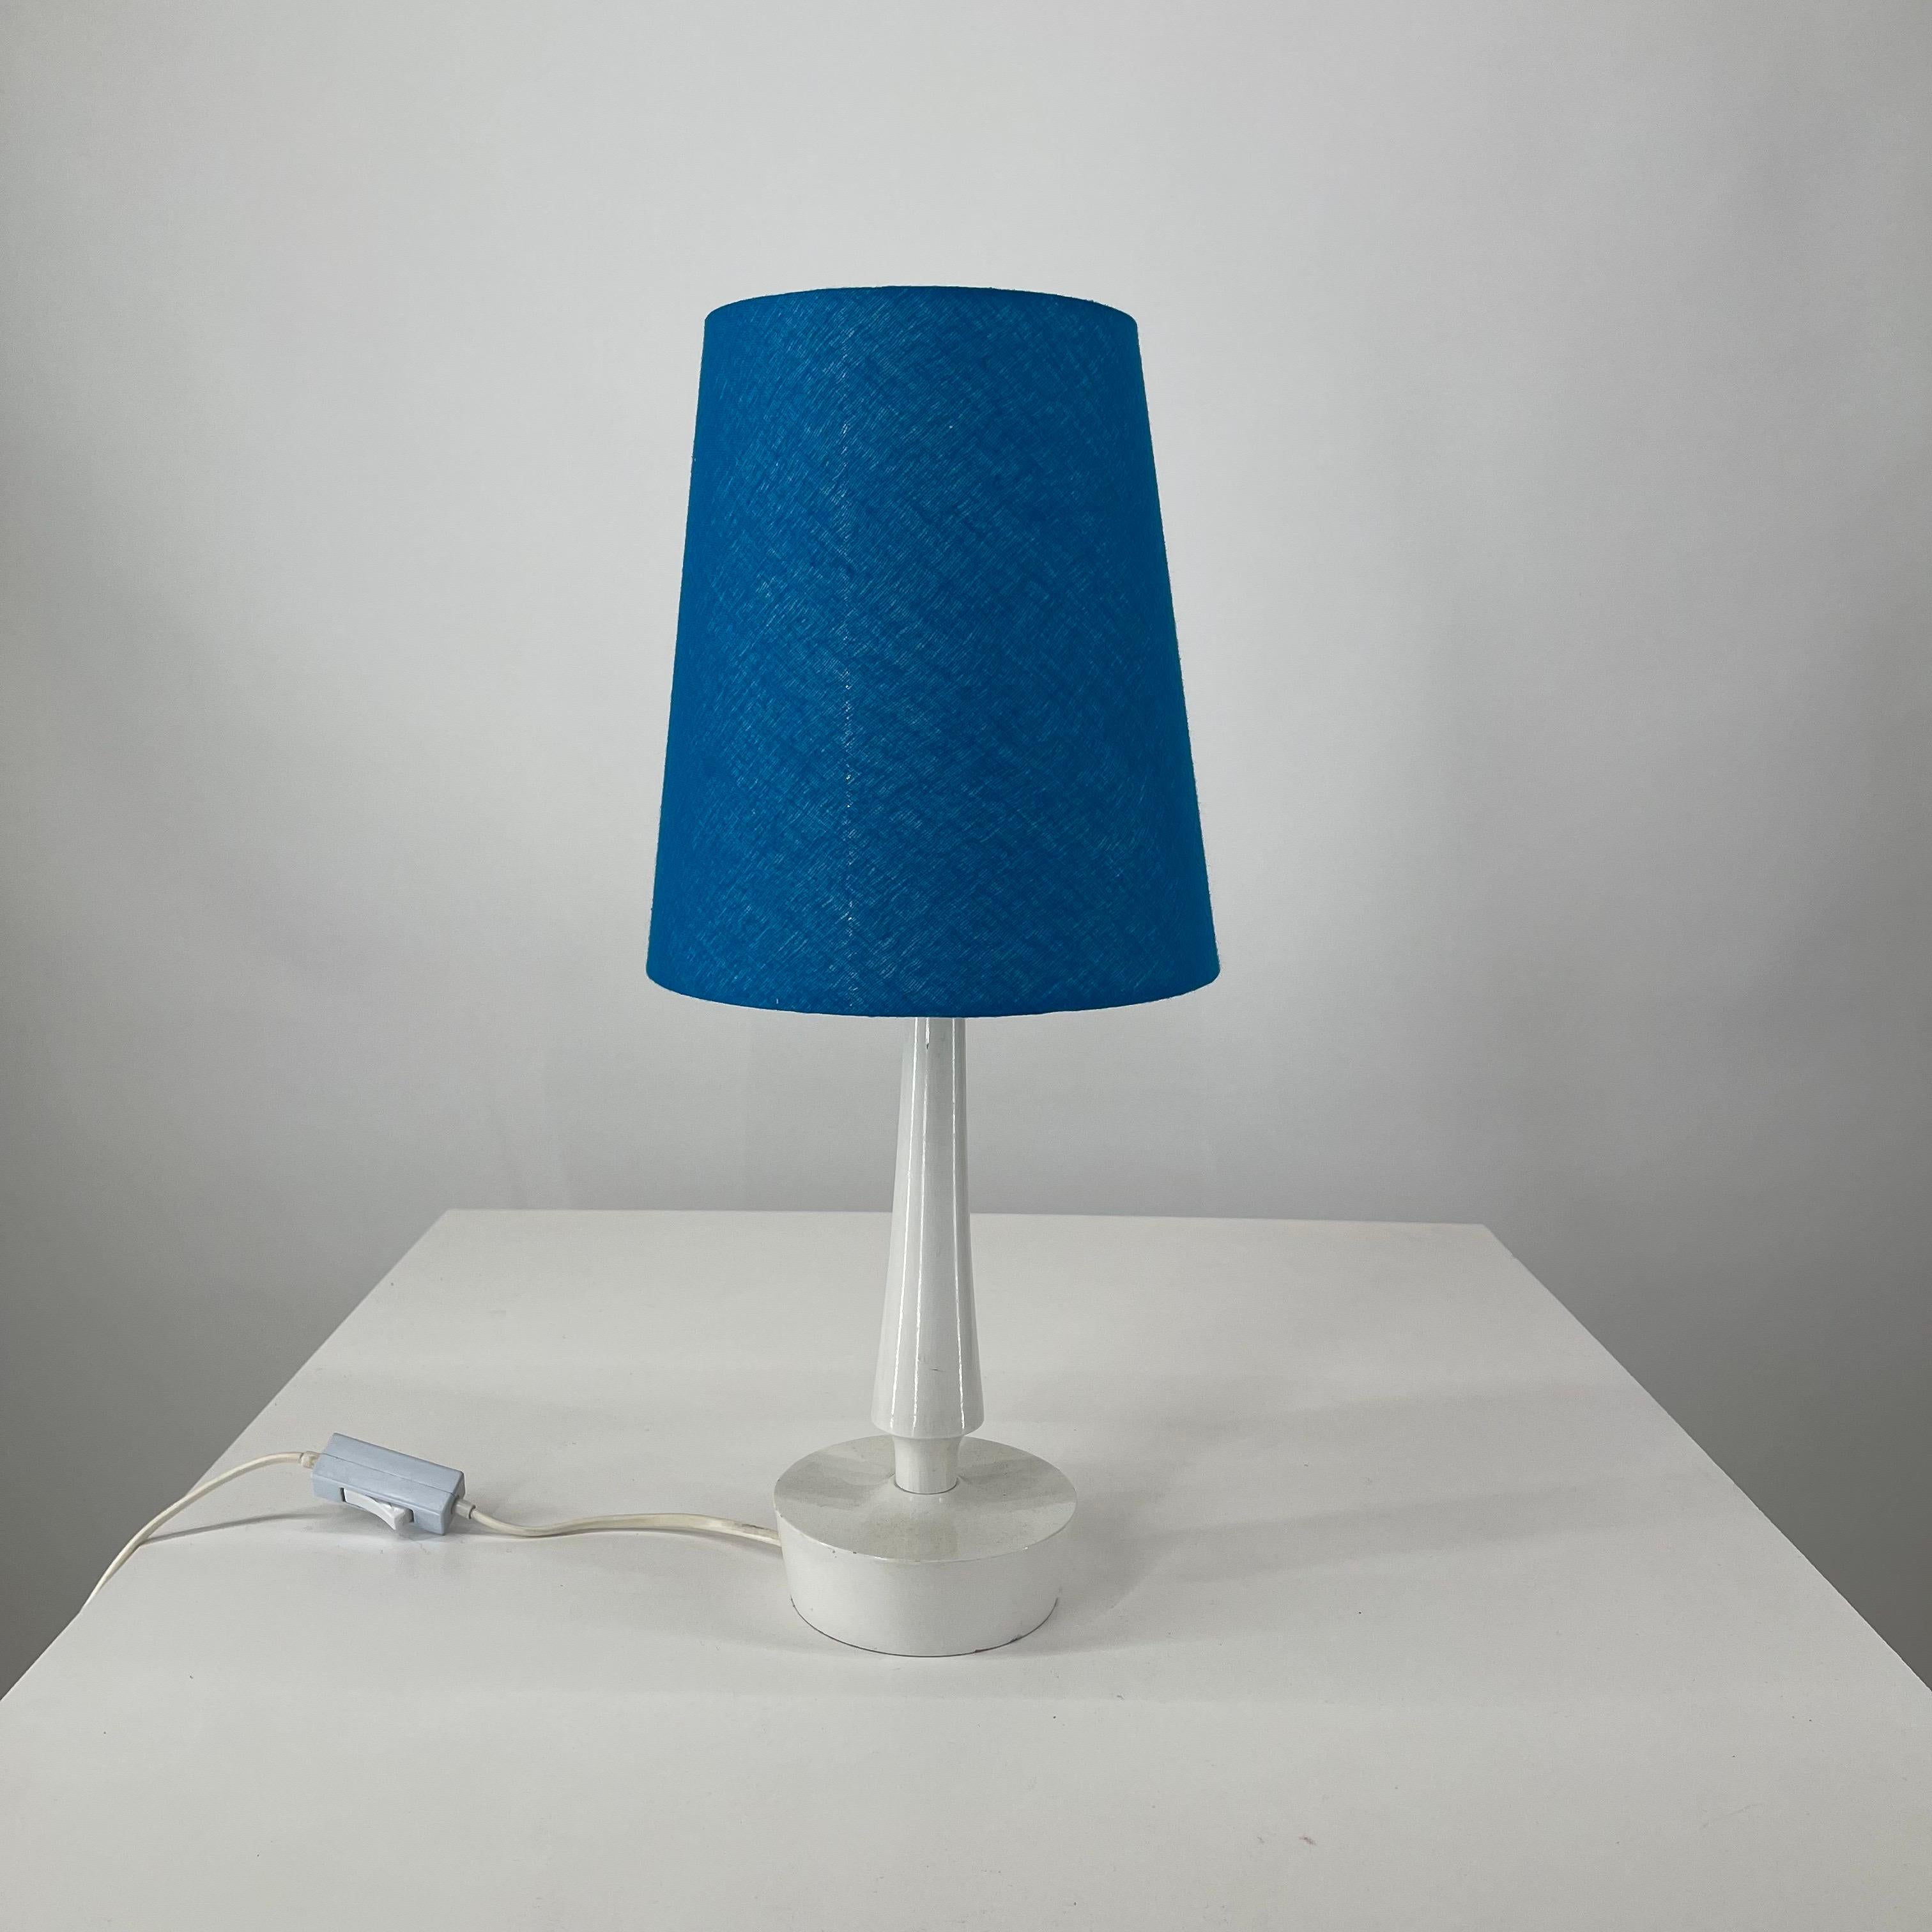 Scandinavian modern elegant minimal table light, Sweden 1960s.